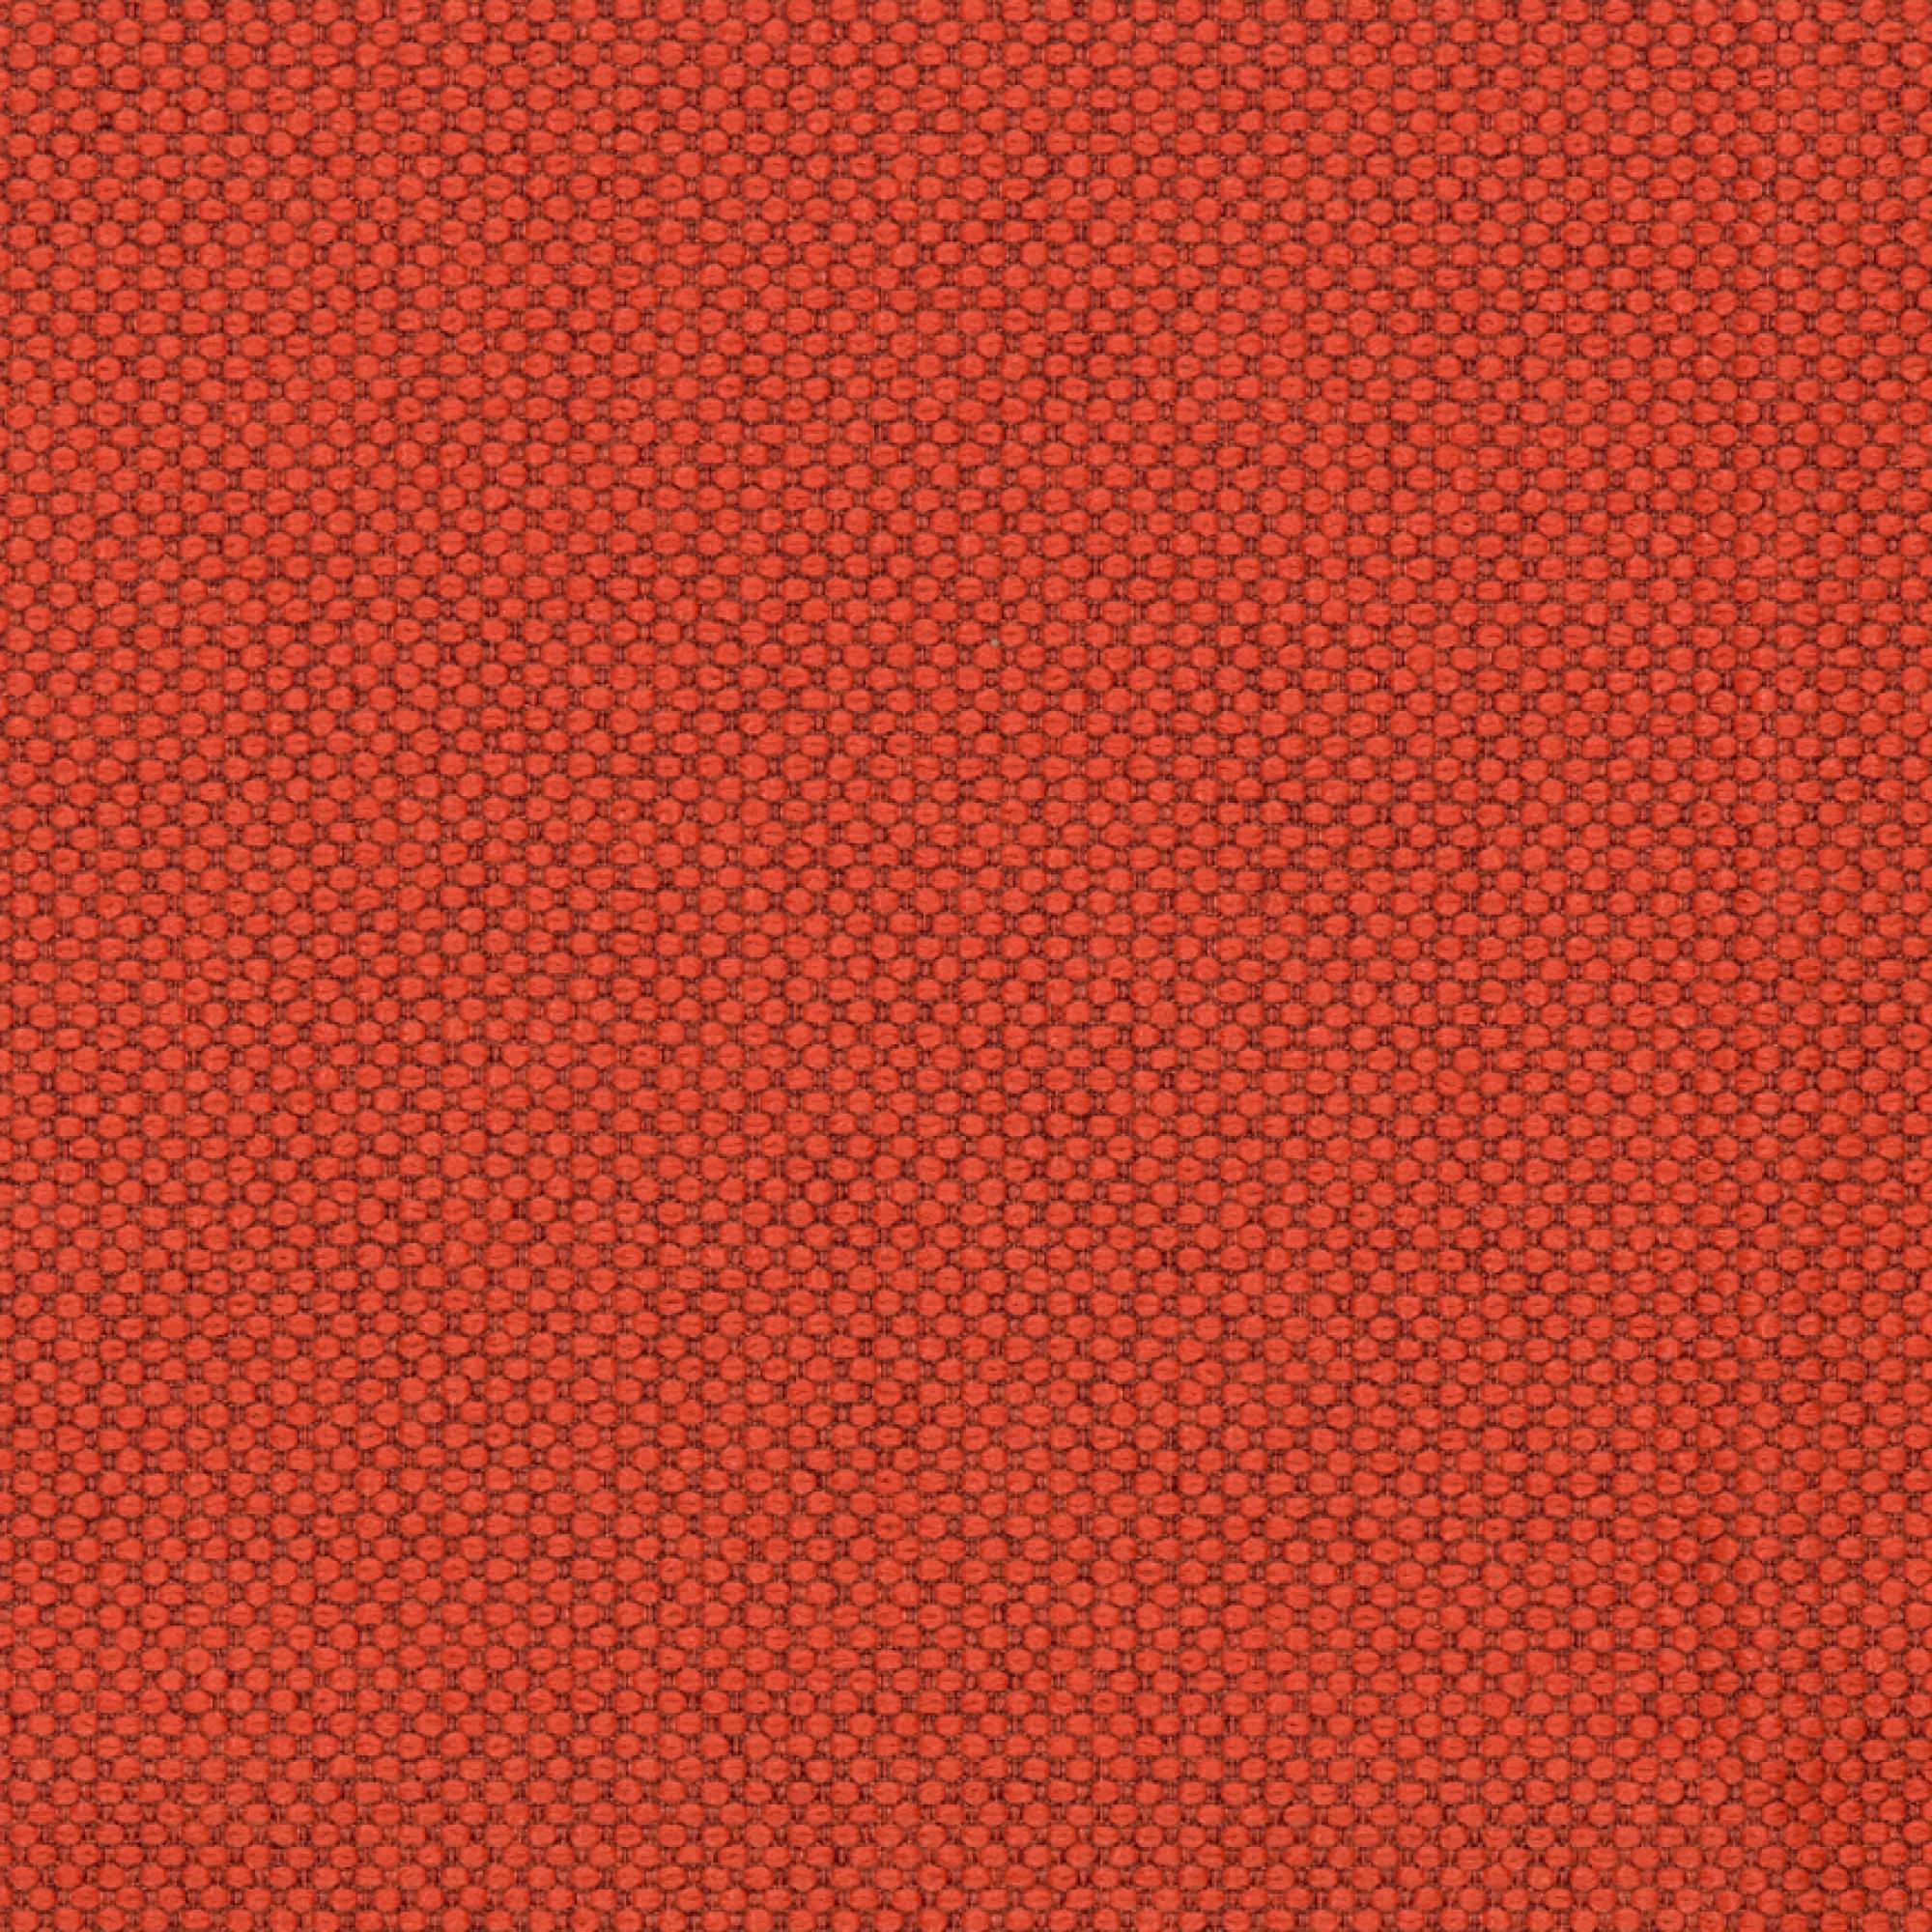 Fabric sample Merit 0037 red